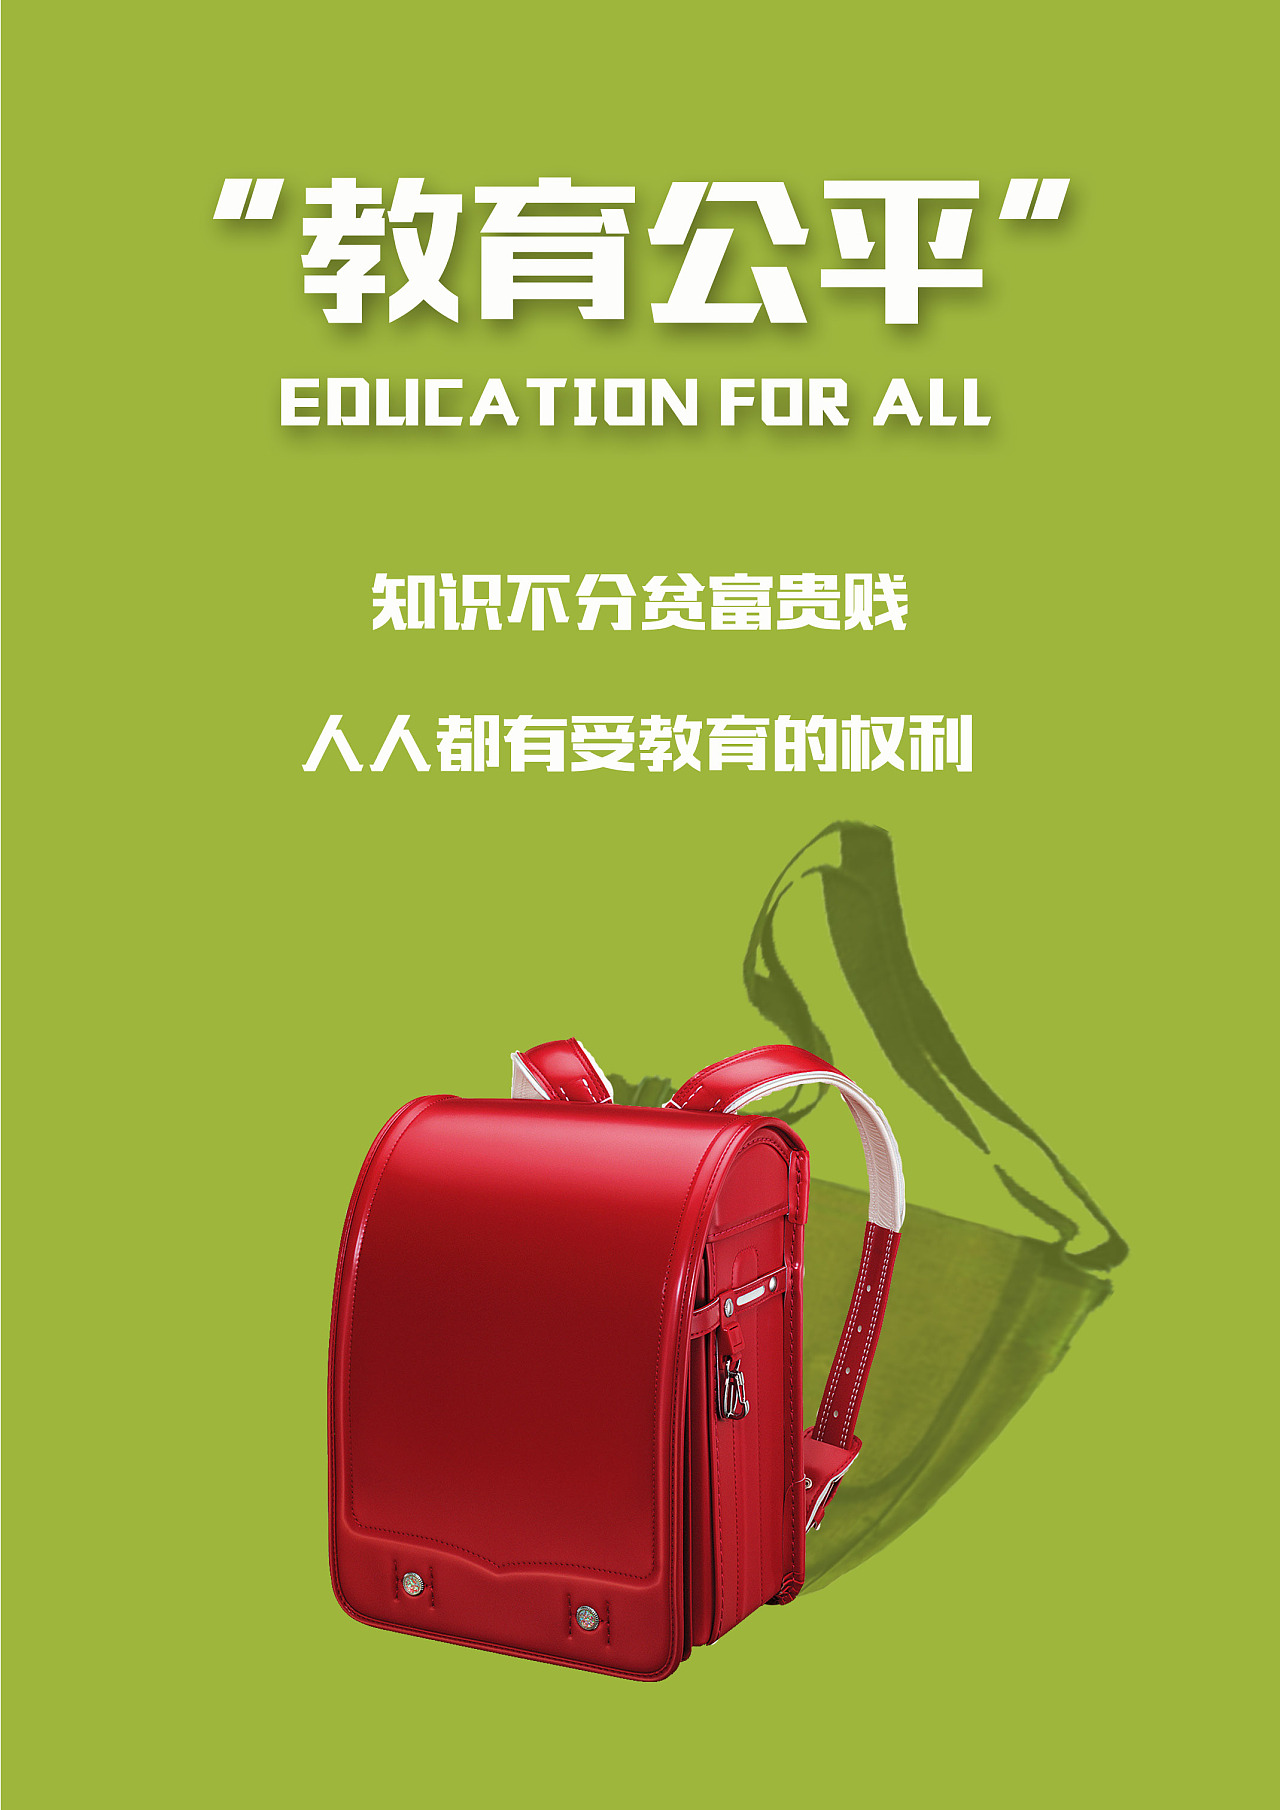 教育公平公益广告海报